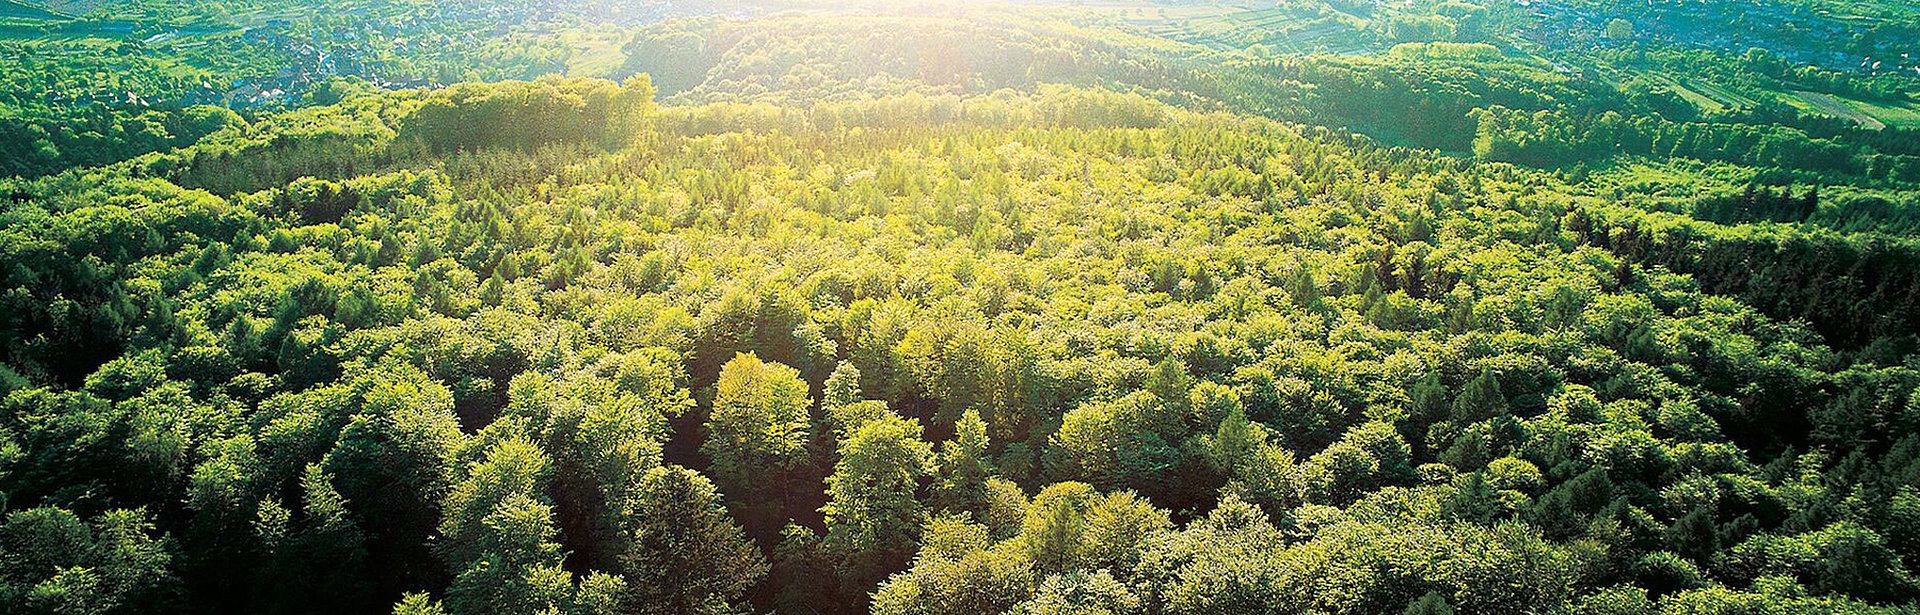 Ein großes Waldgebiet, das von der Sonne großflächig beschienen wird.